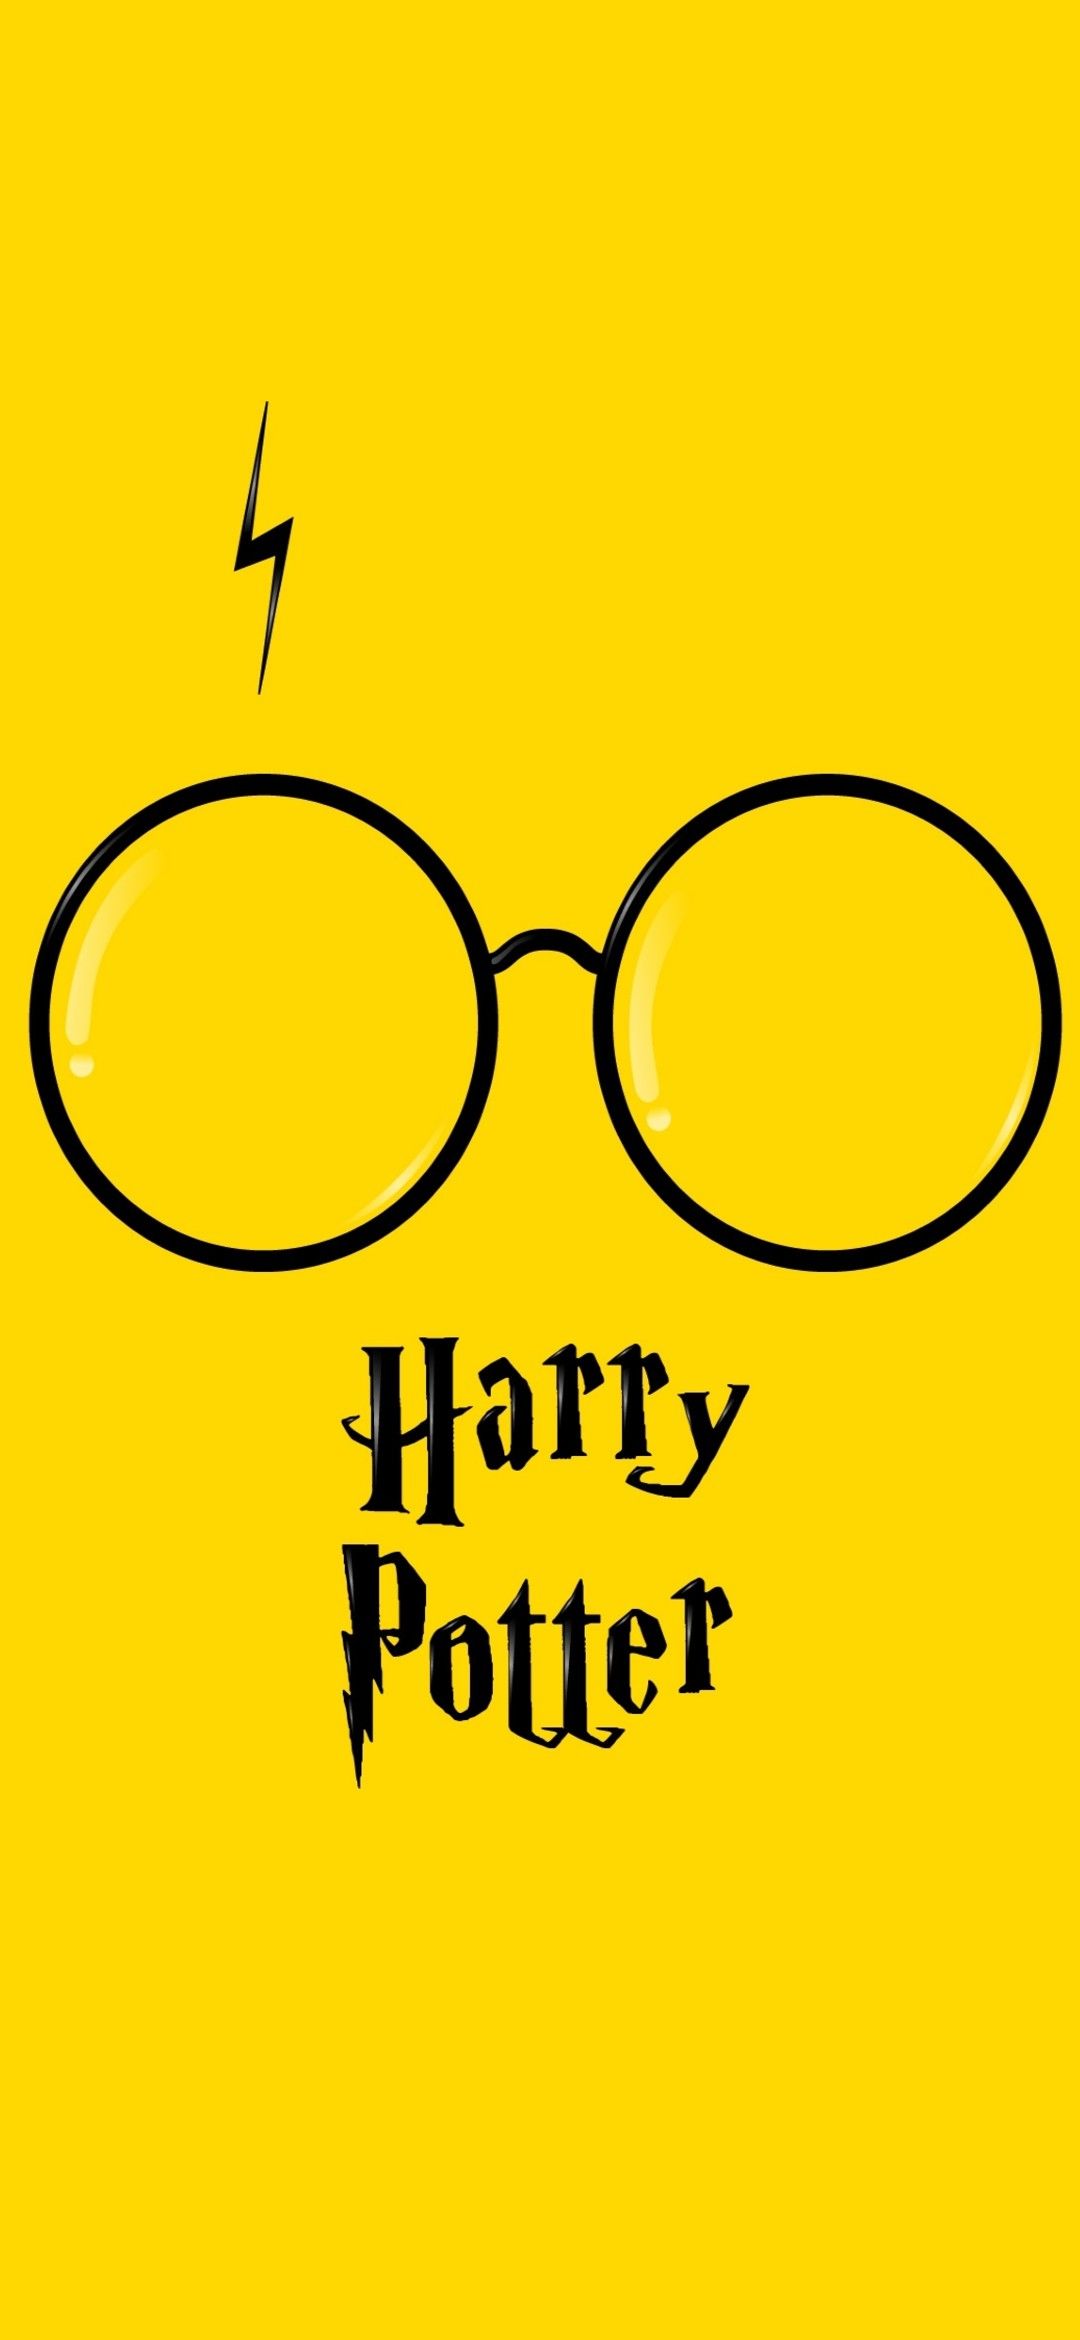 New Wallpaper for Desktop and Mobile  Harry Potter Magic Awakened